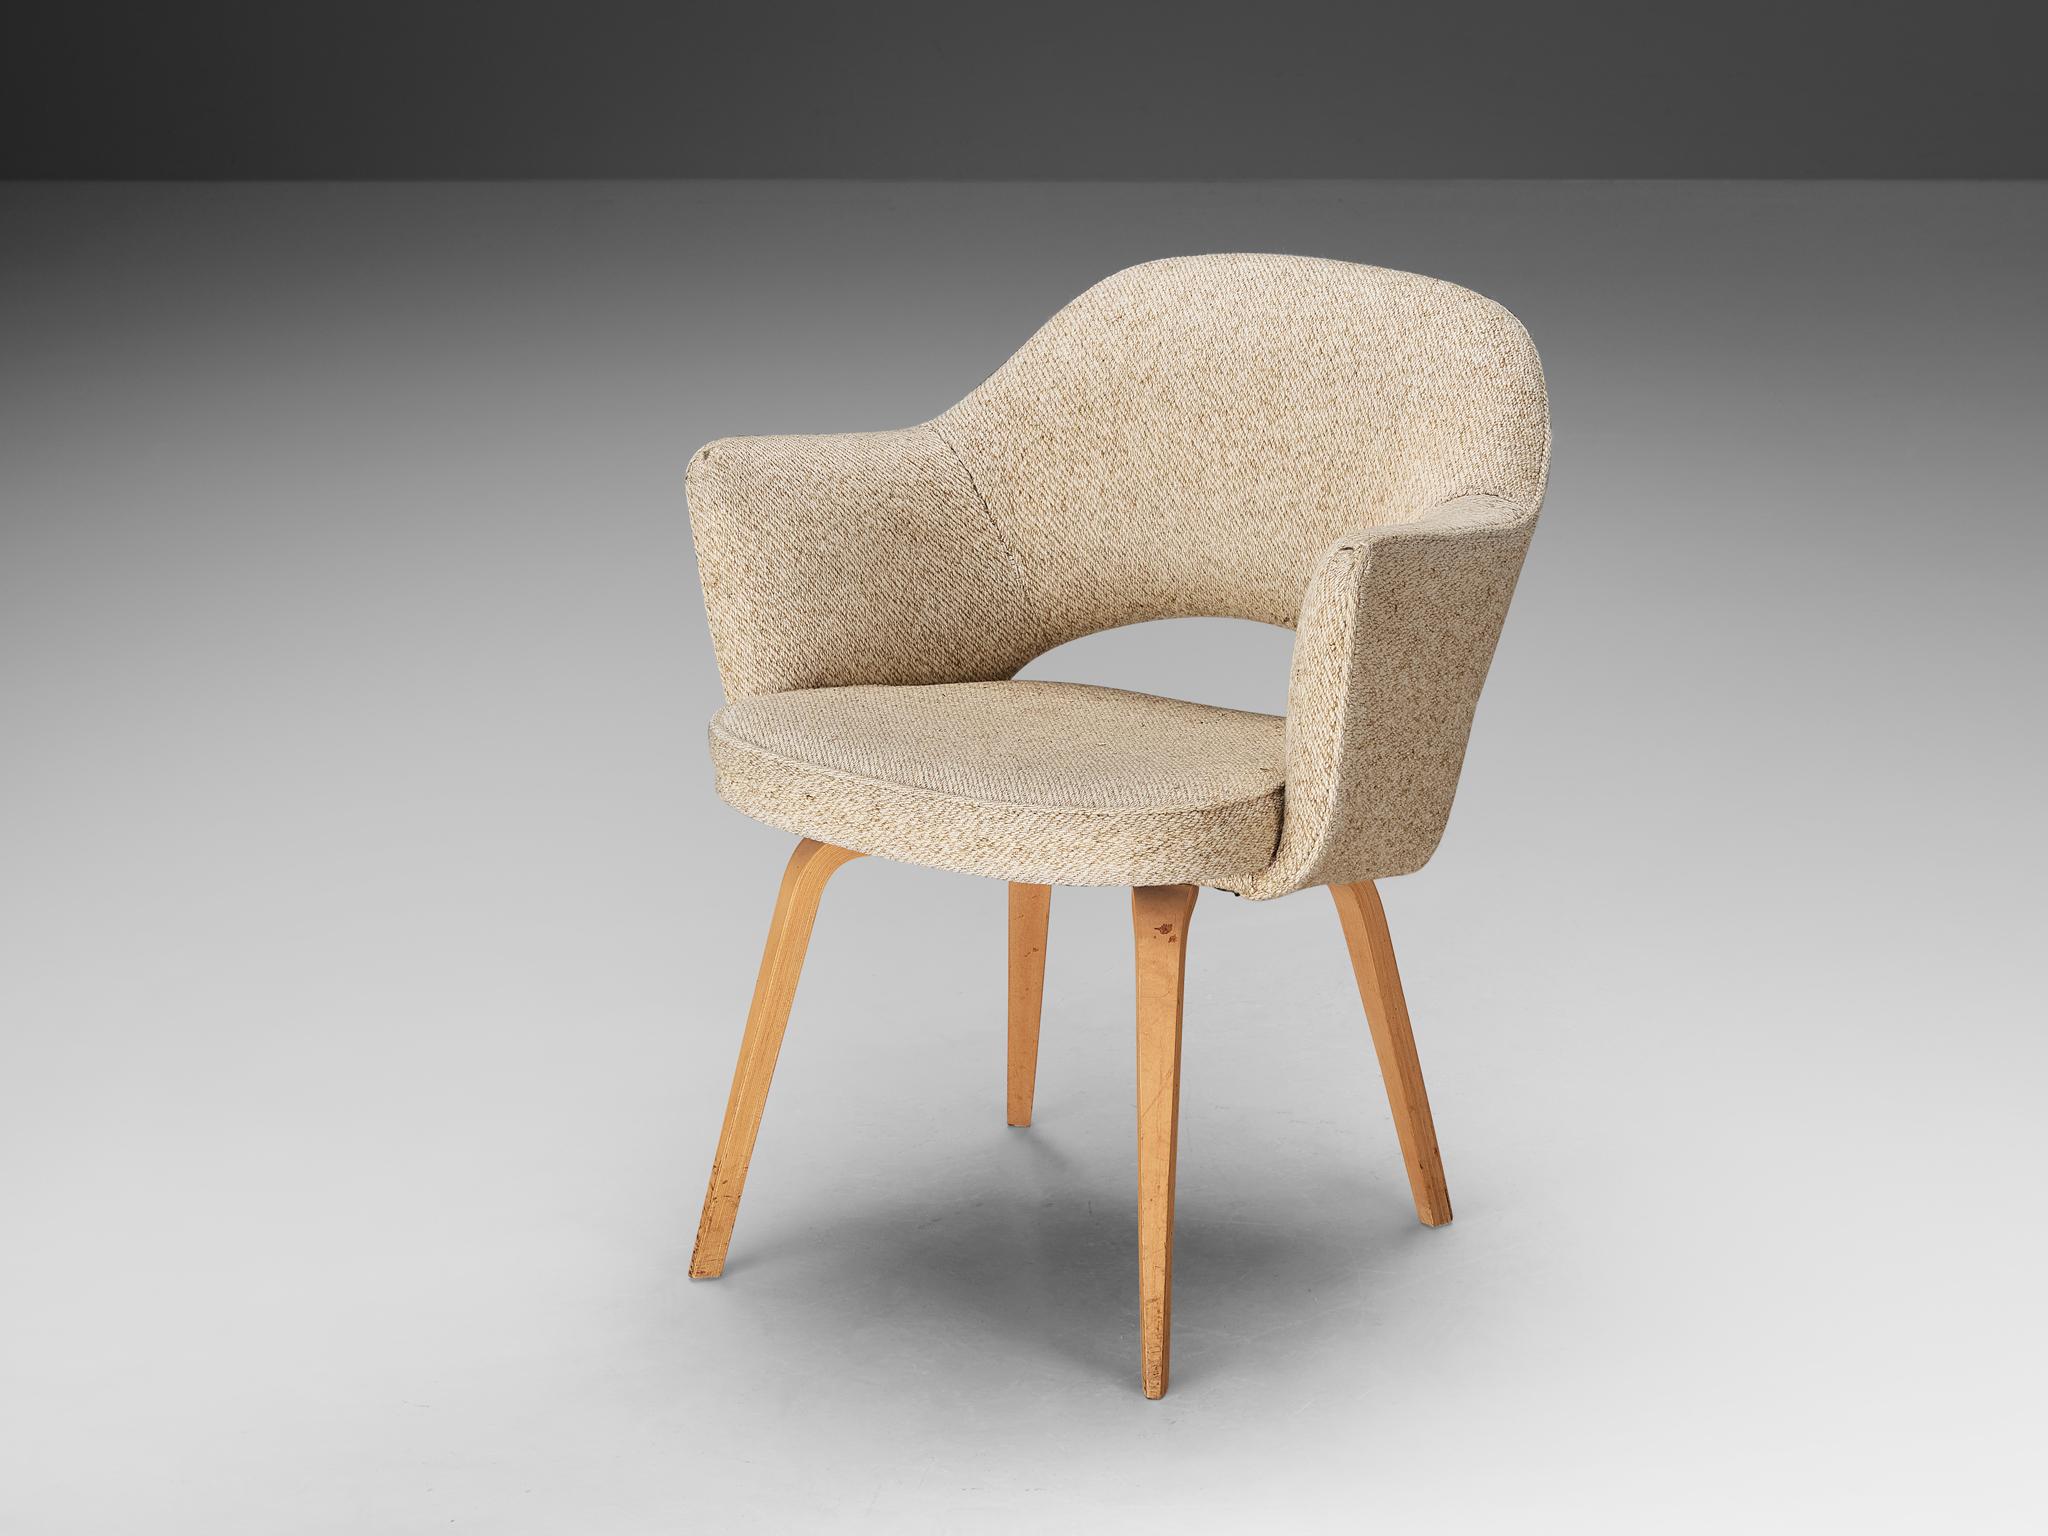 Eero Saarinen für Knoll International, Sessel, Eiche, Stoff, Vereinigte Staaten, Entwurf 1948, spätere Produktion

Ein organisch geformter Sessel, entworfen von Eero Saarinen. Eine fließende, skulpturale Form A. Dieses zeitlose und vielseitige